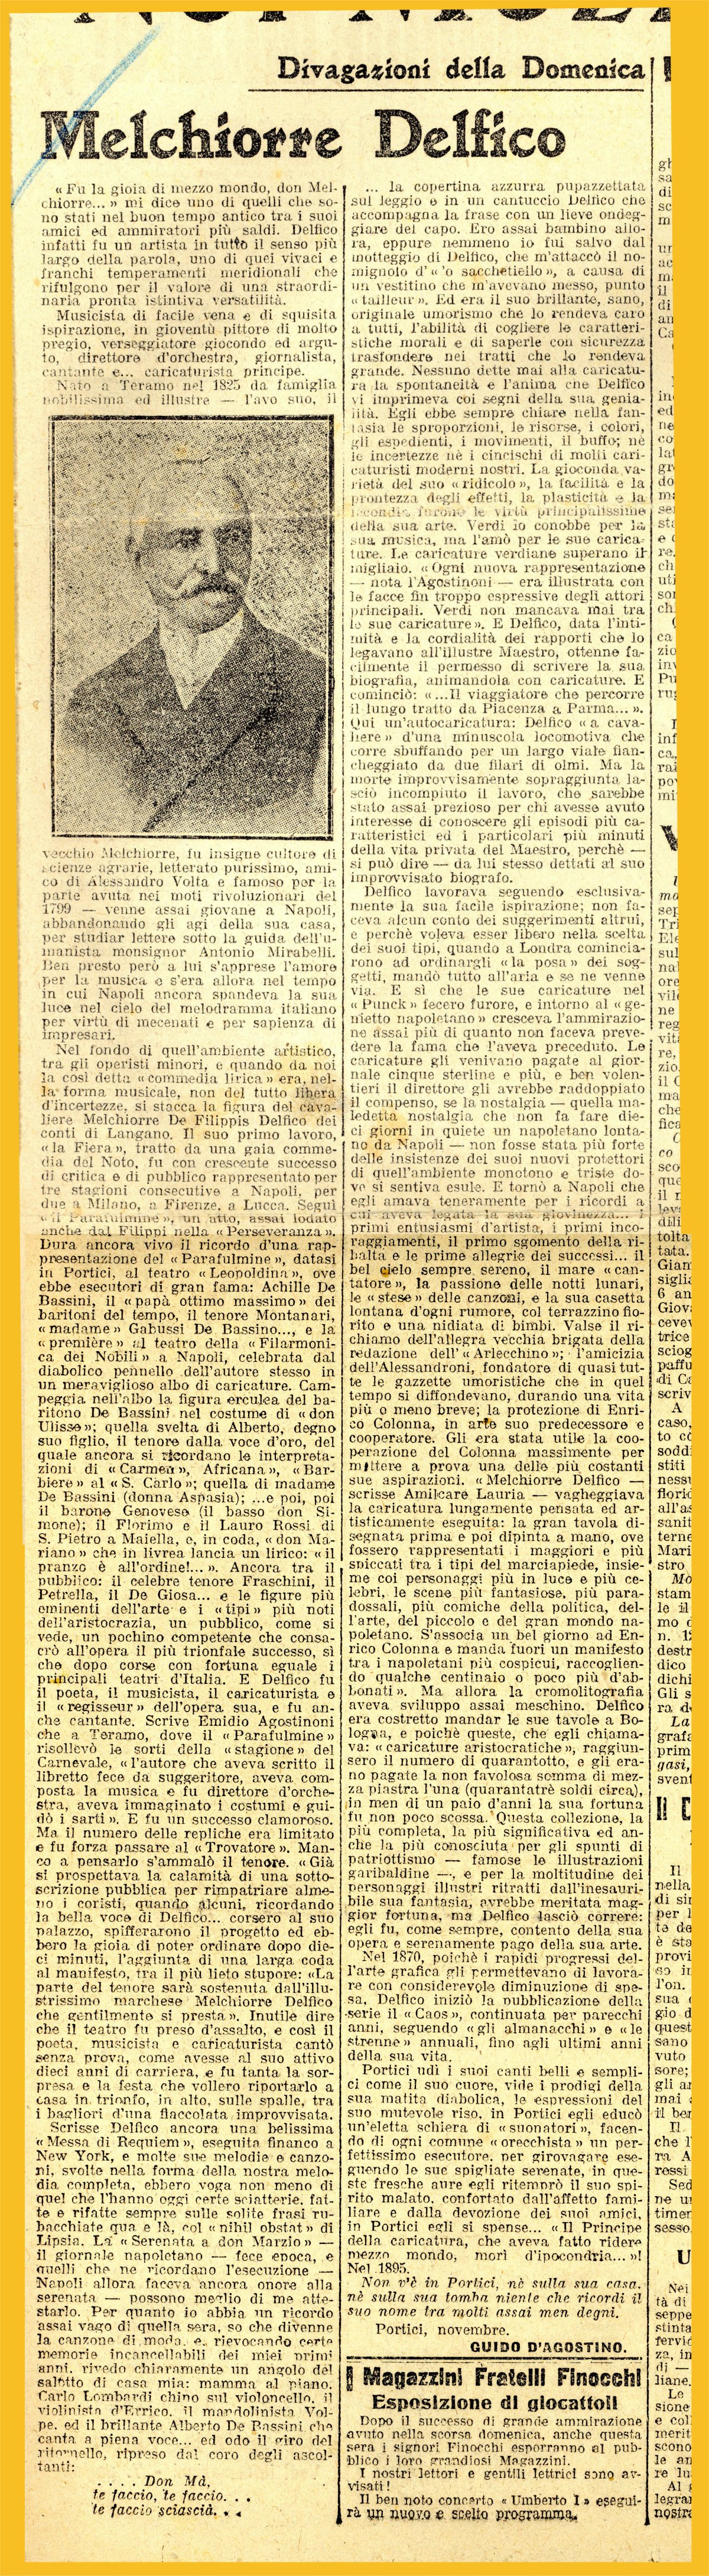 Melchiorre Delfico, in "Il Giornale d'Italia", rubrica "Divagazioni della Domenica", Domenica 21 Dicembre 1913